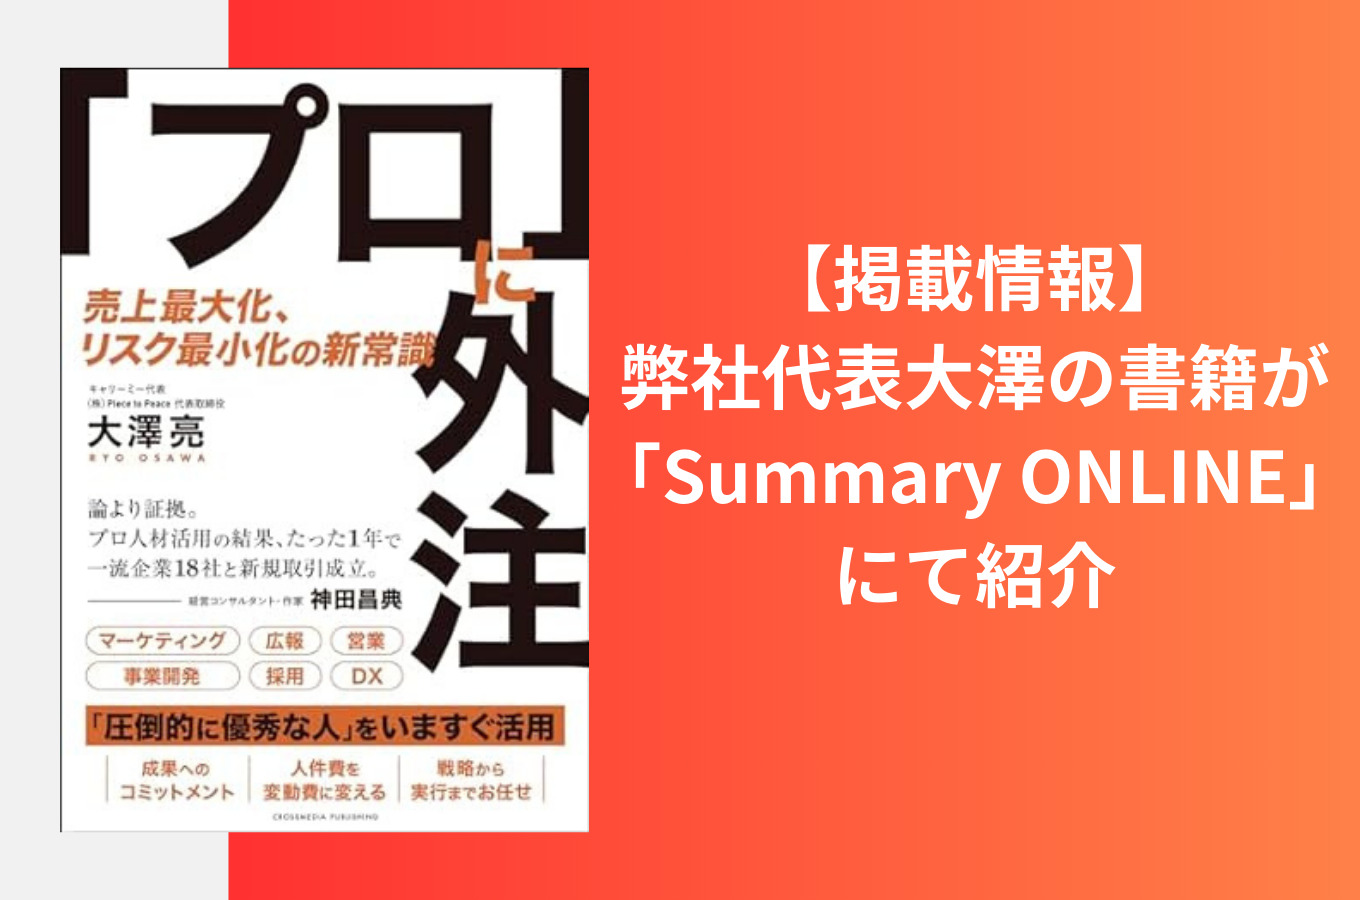 【掲載情報】弊社代表大澤の書籍が「Summary ONLINE」にて紹介されました